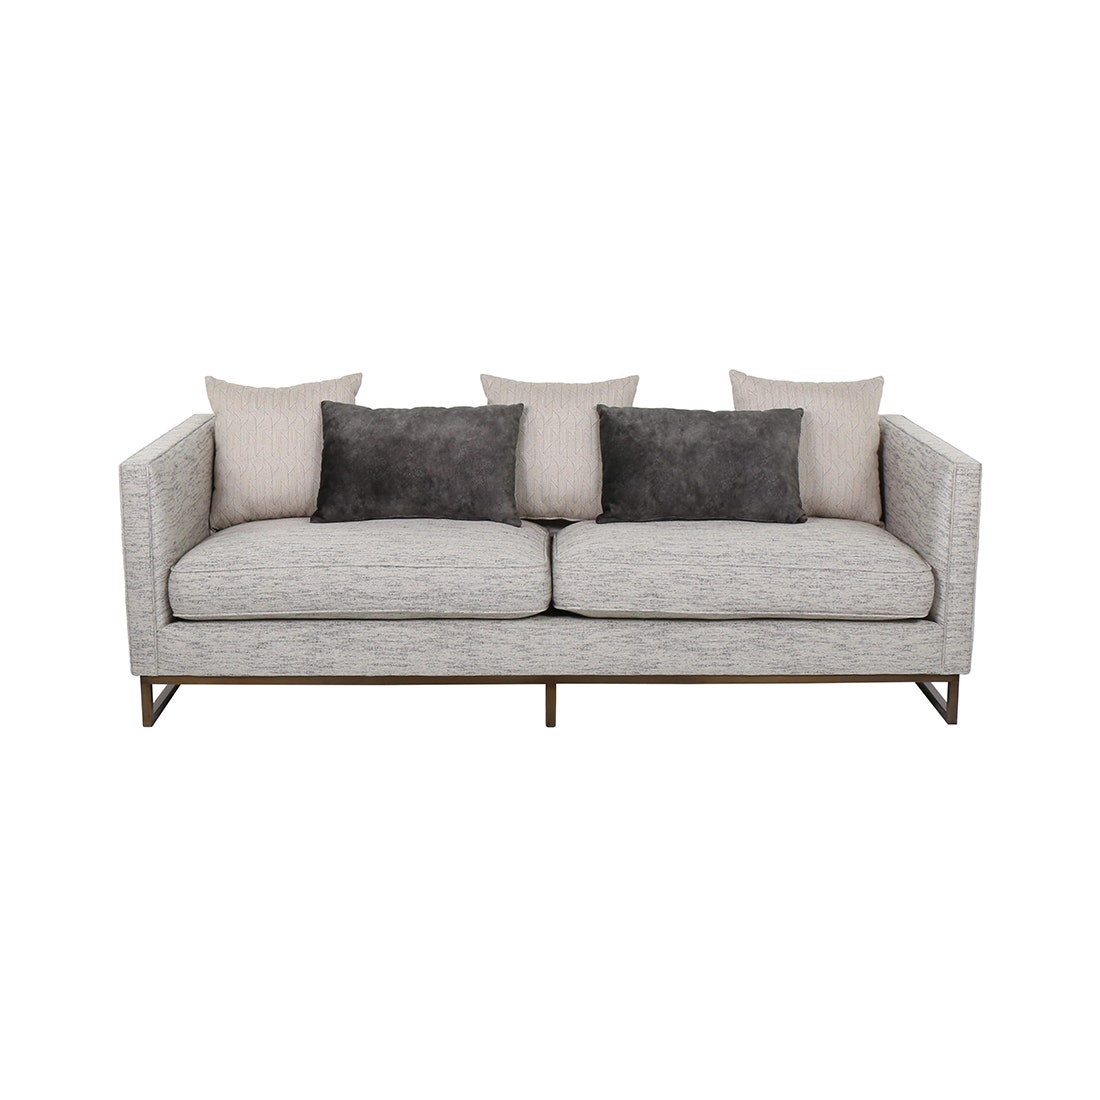 19156007-arbuckle-furniture-sofa-recliner-sofas-06